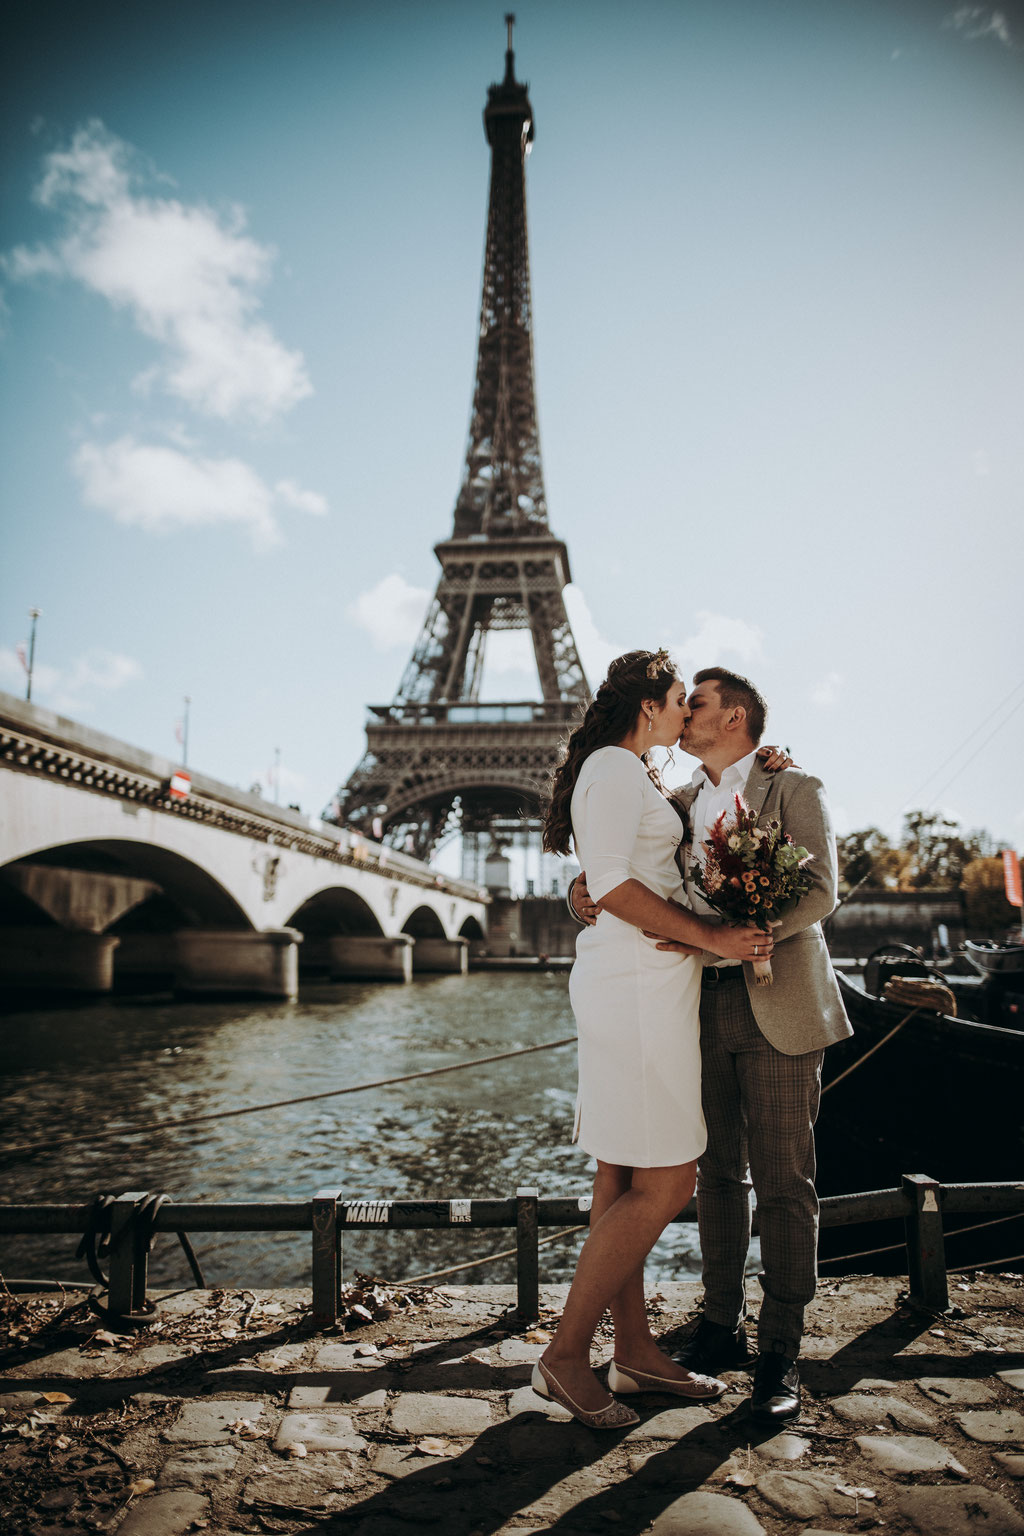 Destination wedding in Paris at the Eiffeltower - Destination wedding photographer - Brautpaar steht am Seineufer, im Hintergrund der Eiffelturm